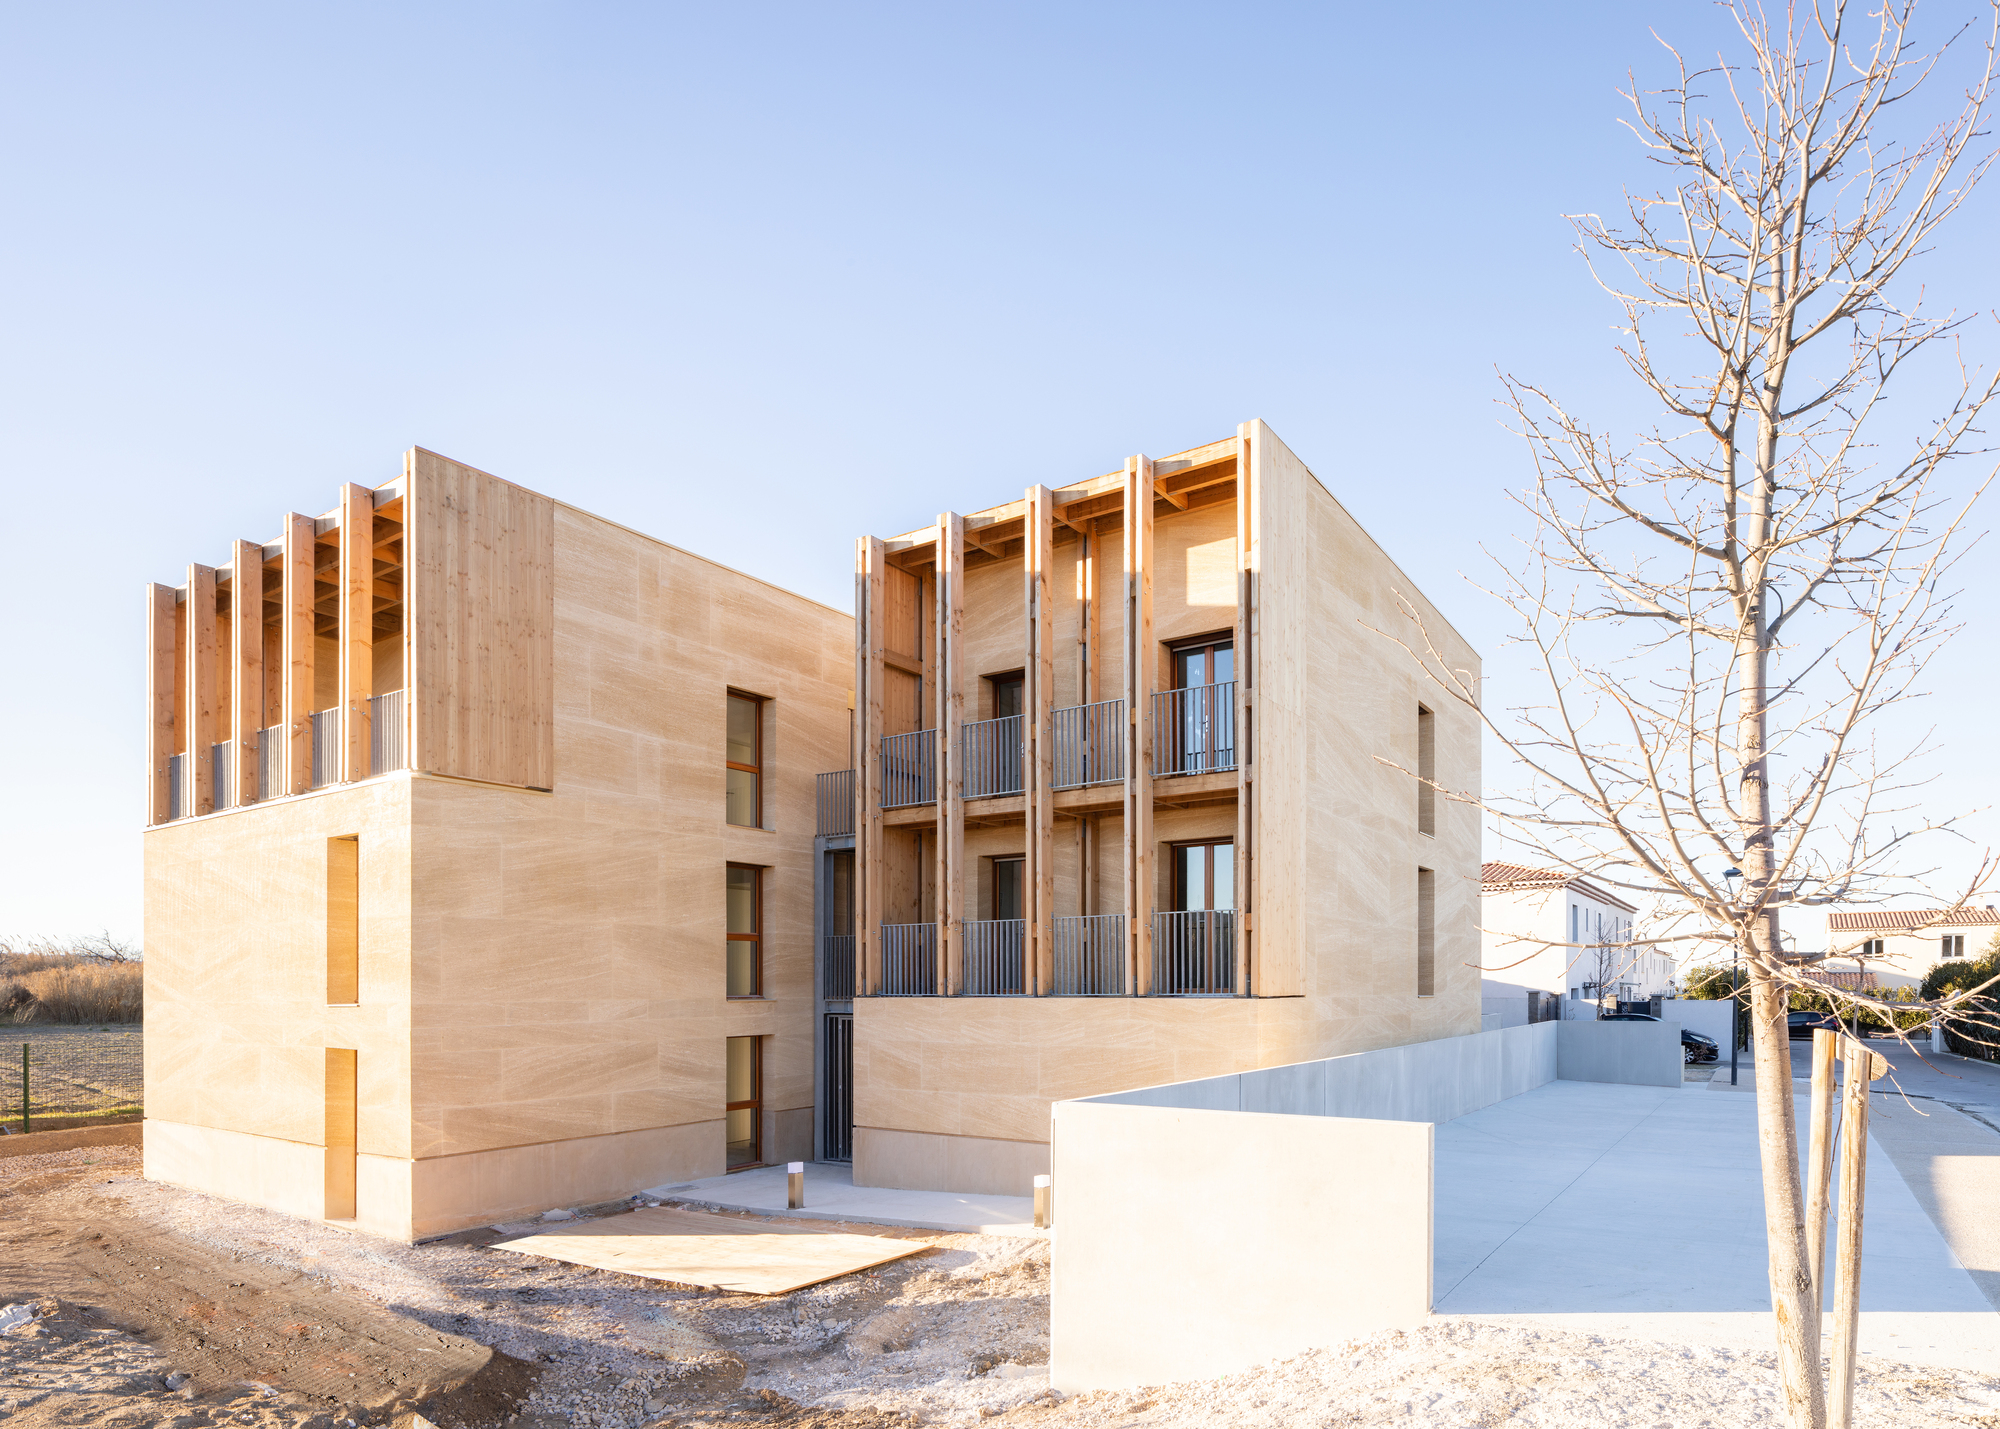 8 единиц социального жилья / Atelier Régis Roudil Architectes